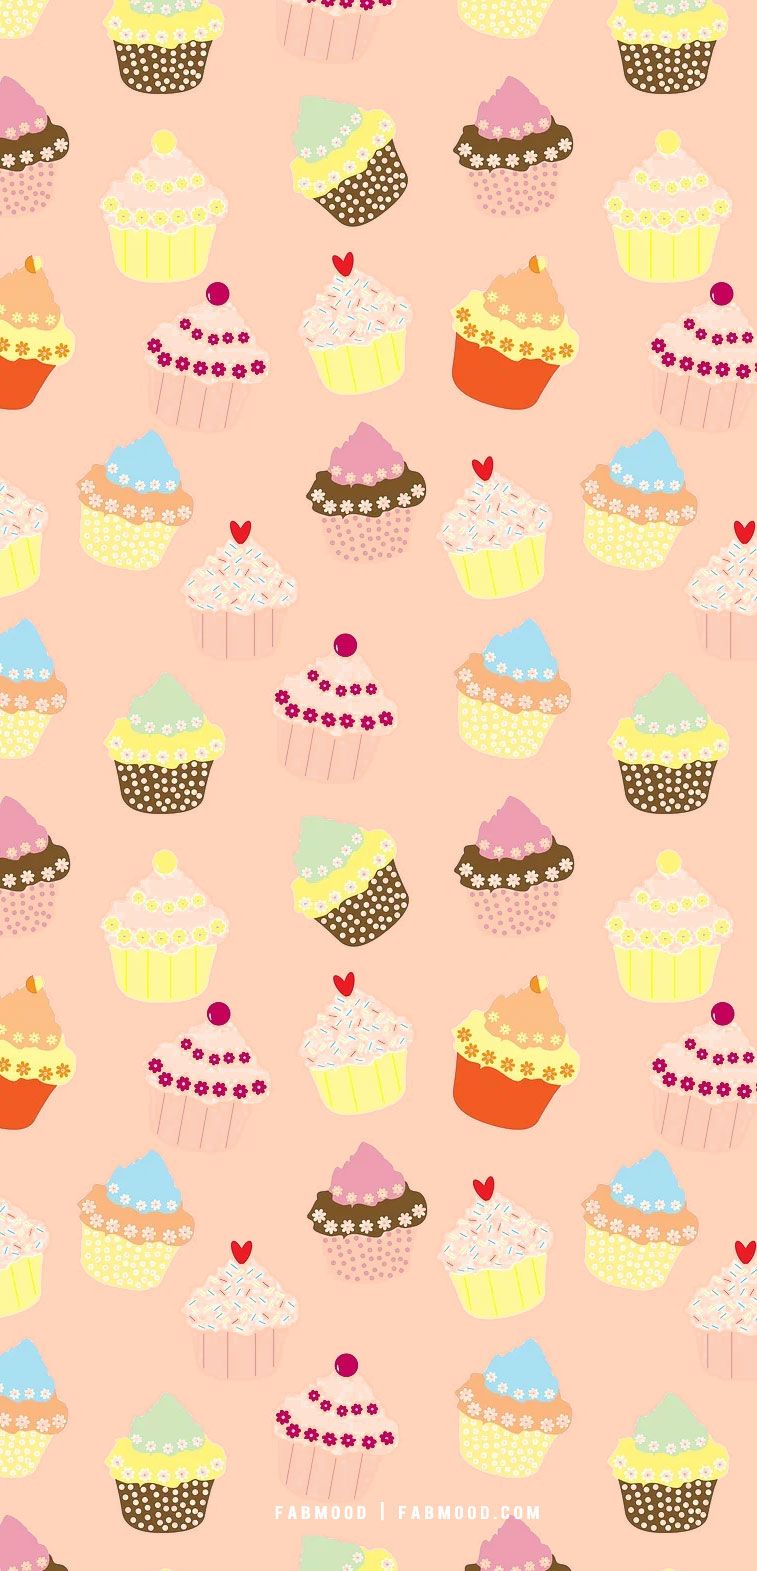 Cute cupcake wallpaper designs for phone, Cupcake Wallpaper aesthetic